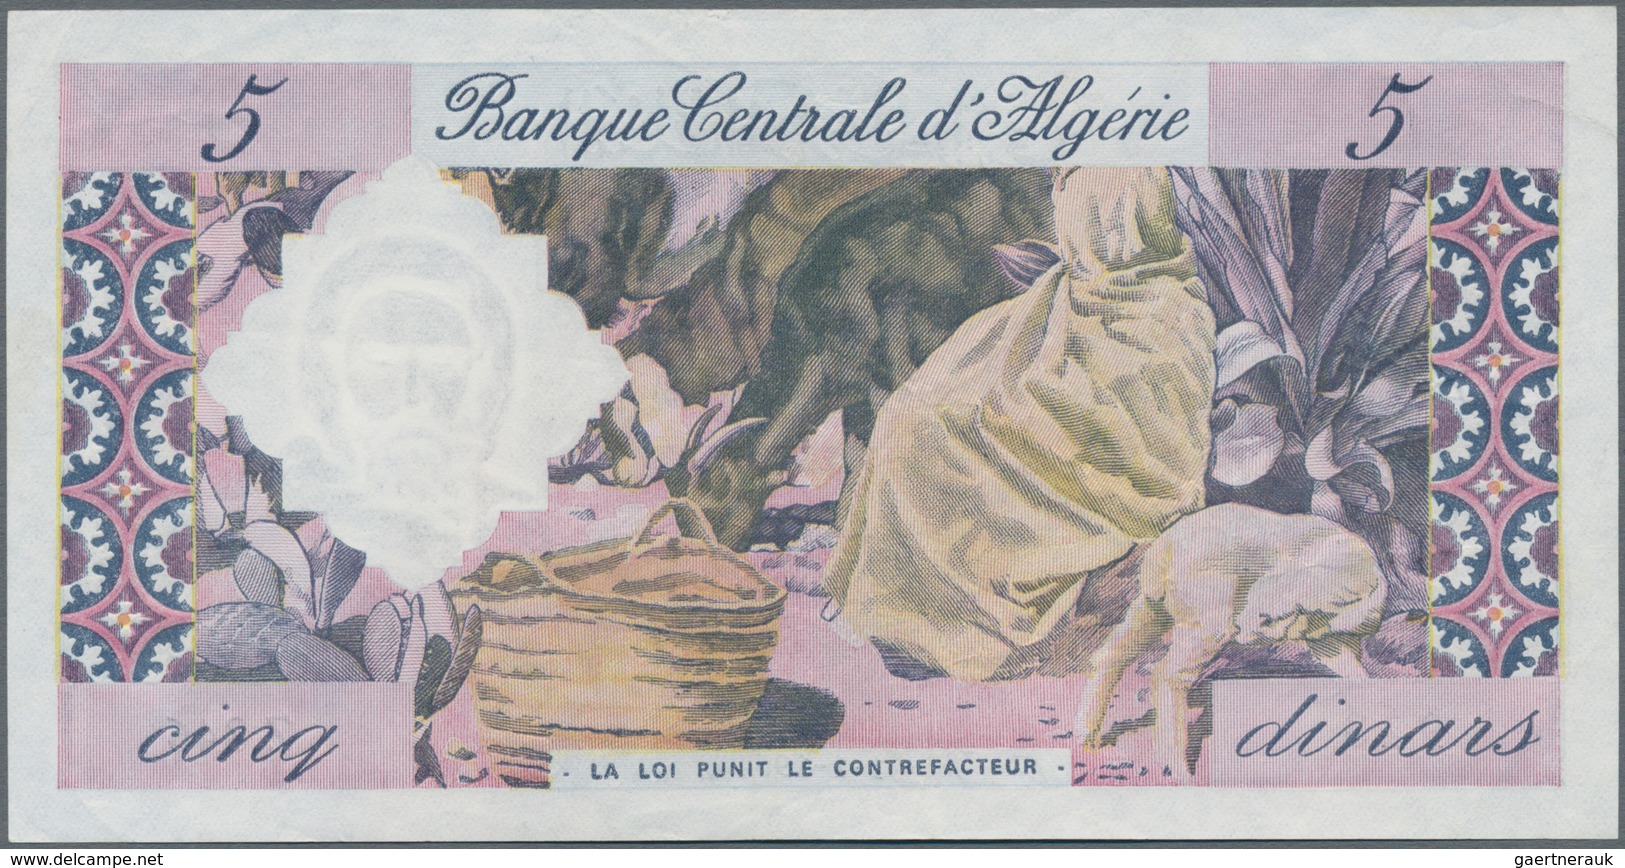 Algeria / Algerien: Banque Centrale D'Algérie 5 Dinars 1964, P.122, Without Pinholes, Just Some Fold - Algeria